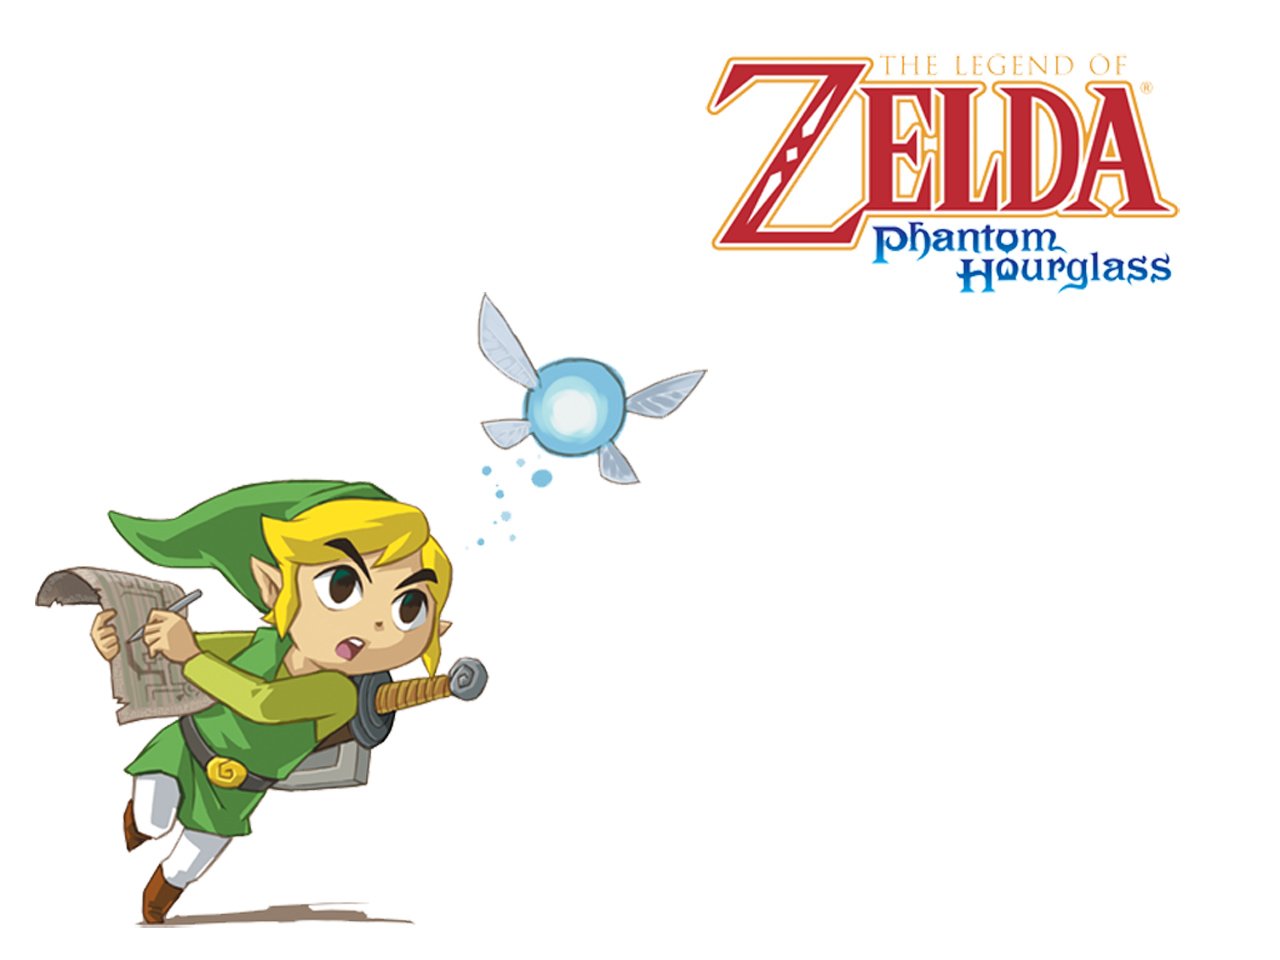 Toon Link Neri (The Legend Of Zelda) The Legend of Zelda Link video game The Legend Of Zelda: Phantom Hourglass Image